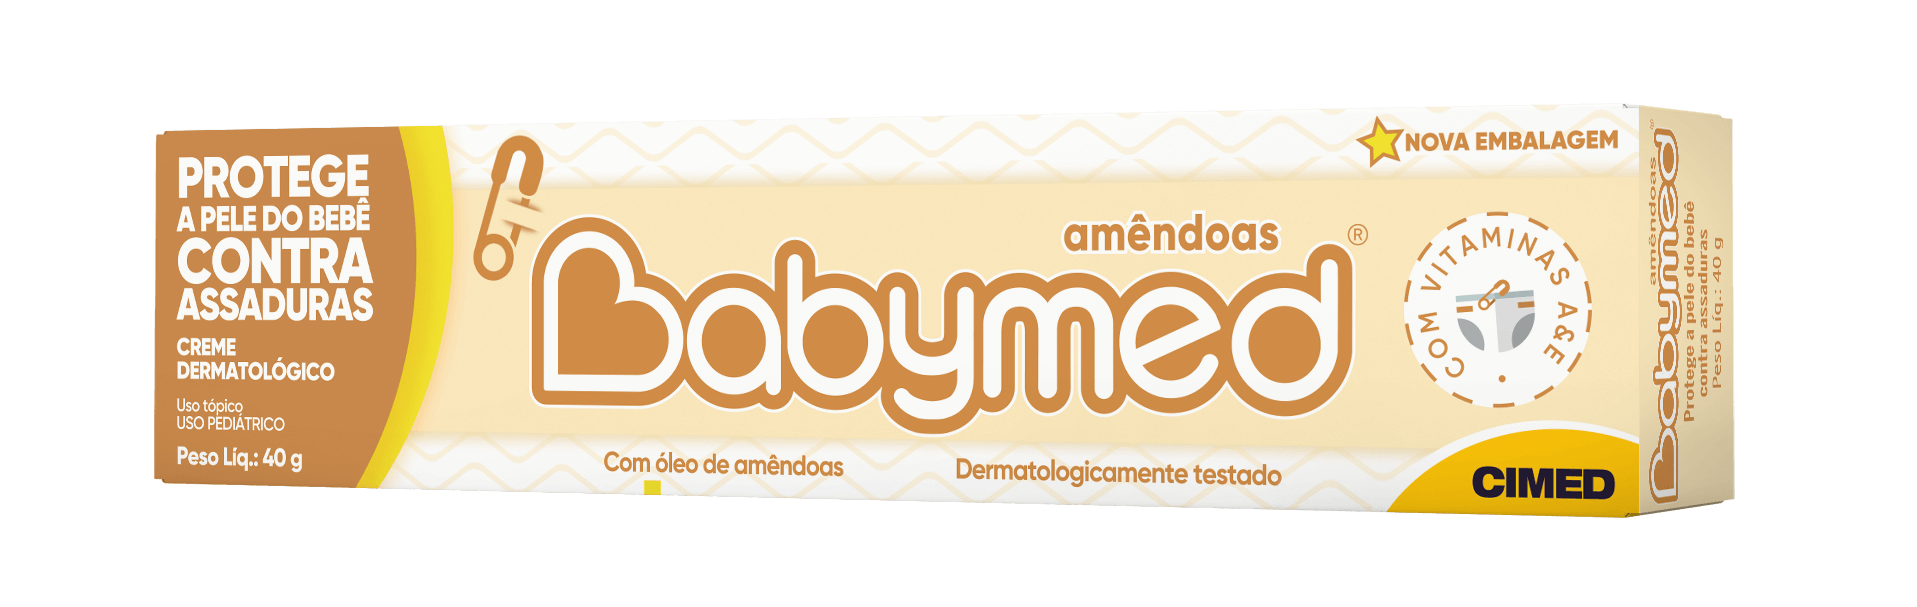 Imagem da embalagem do Babymed Amêndoas.